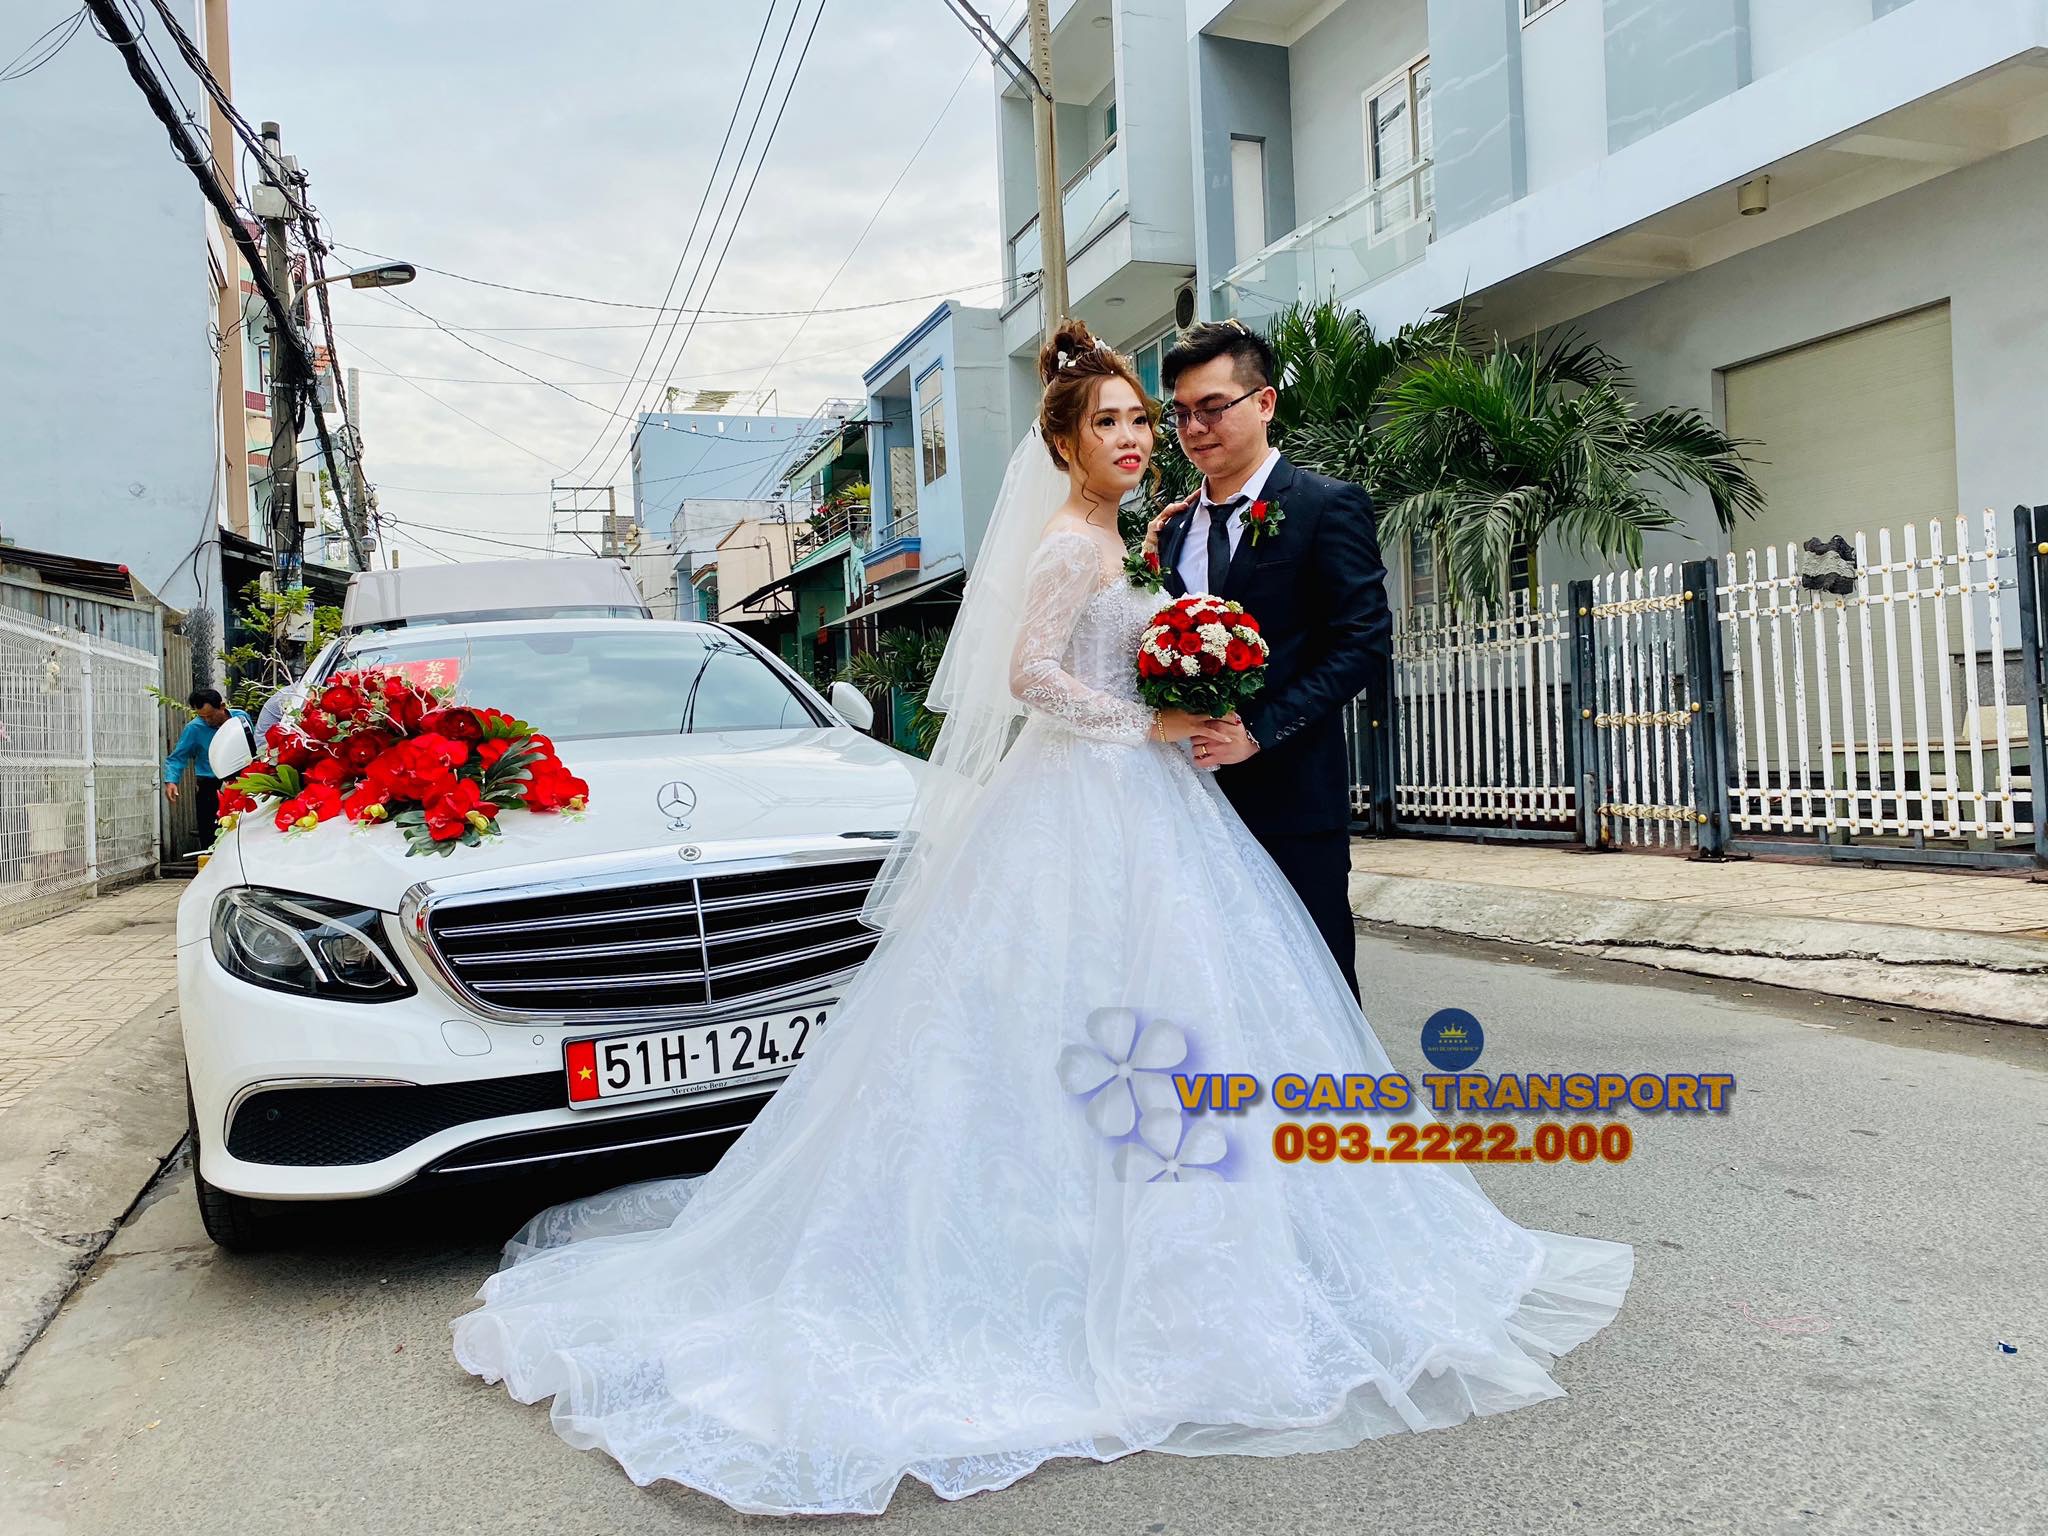 Vip Cars Bảo Dương cho thuê xe cưới ngày 9/2/2020